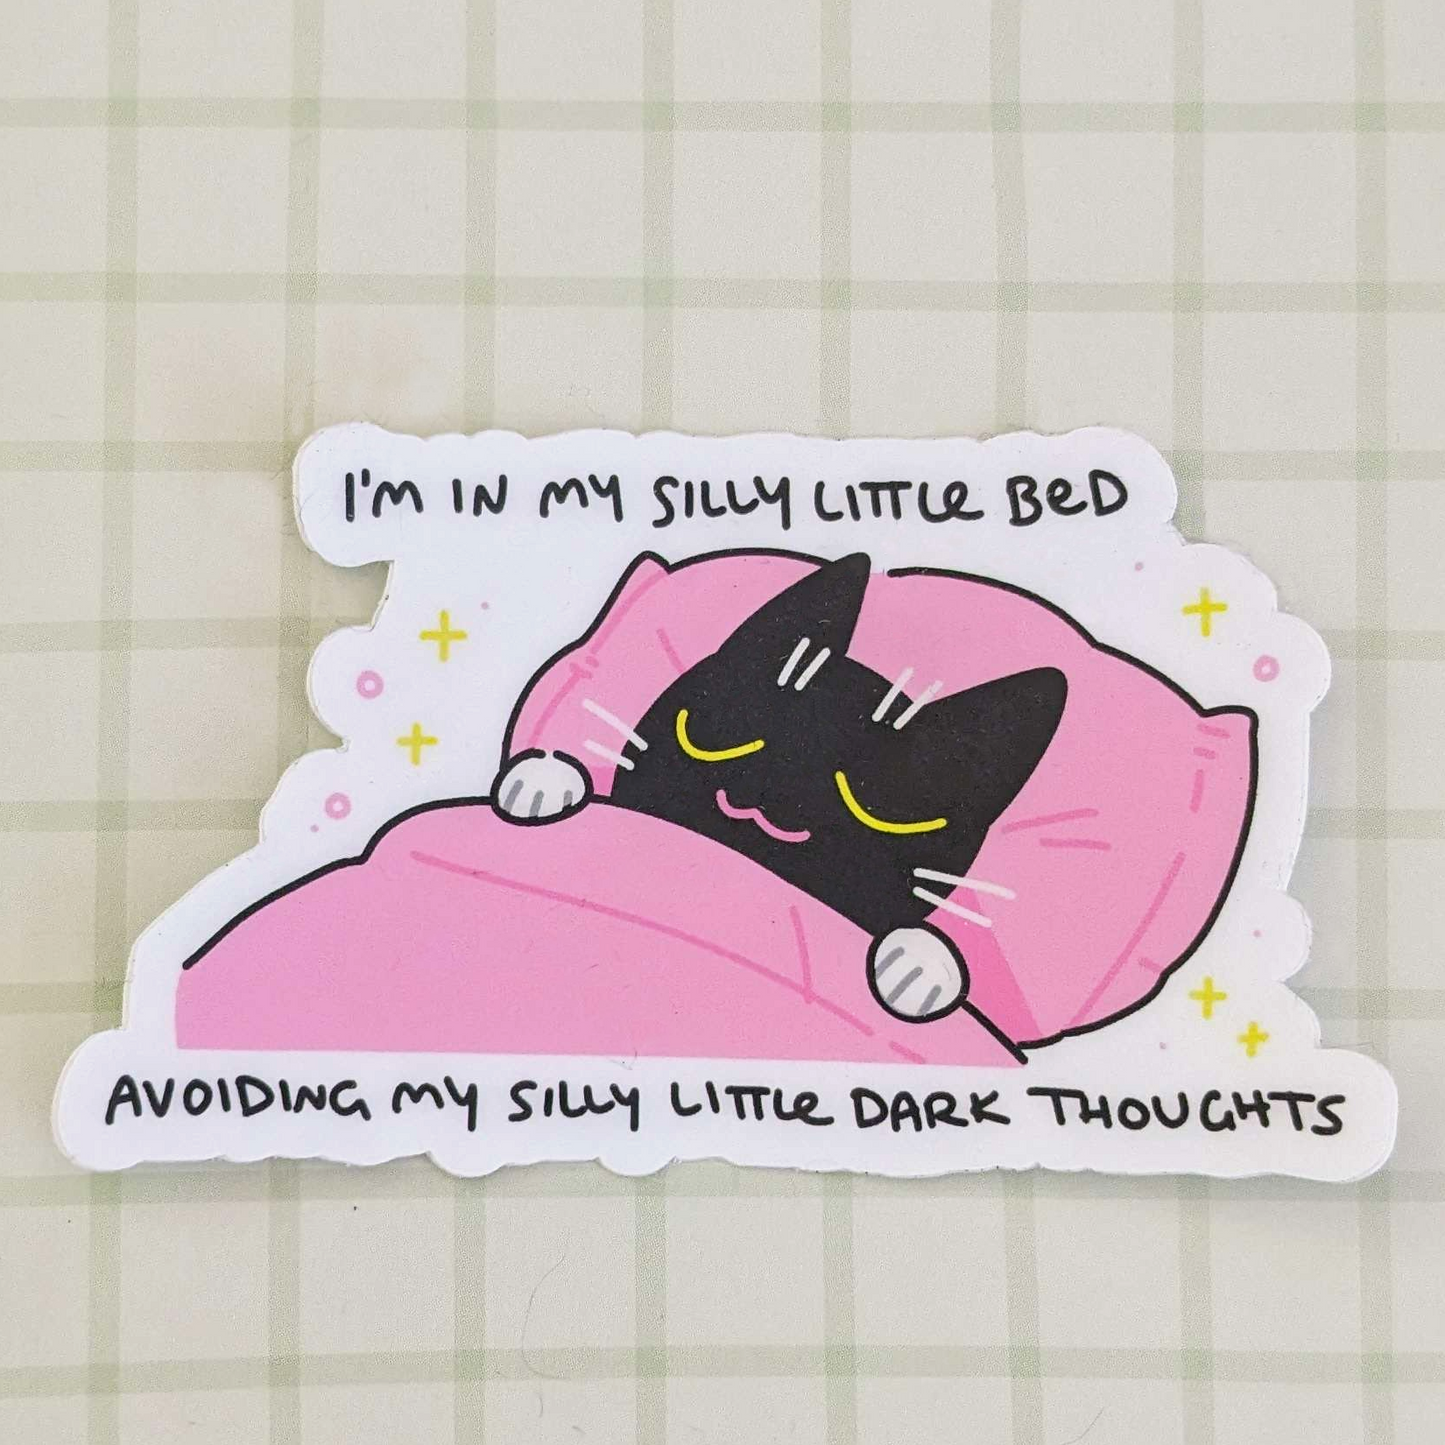 My Dear Cat - Silly Little Bed 3" Sticker